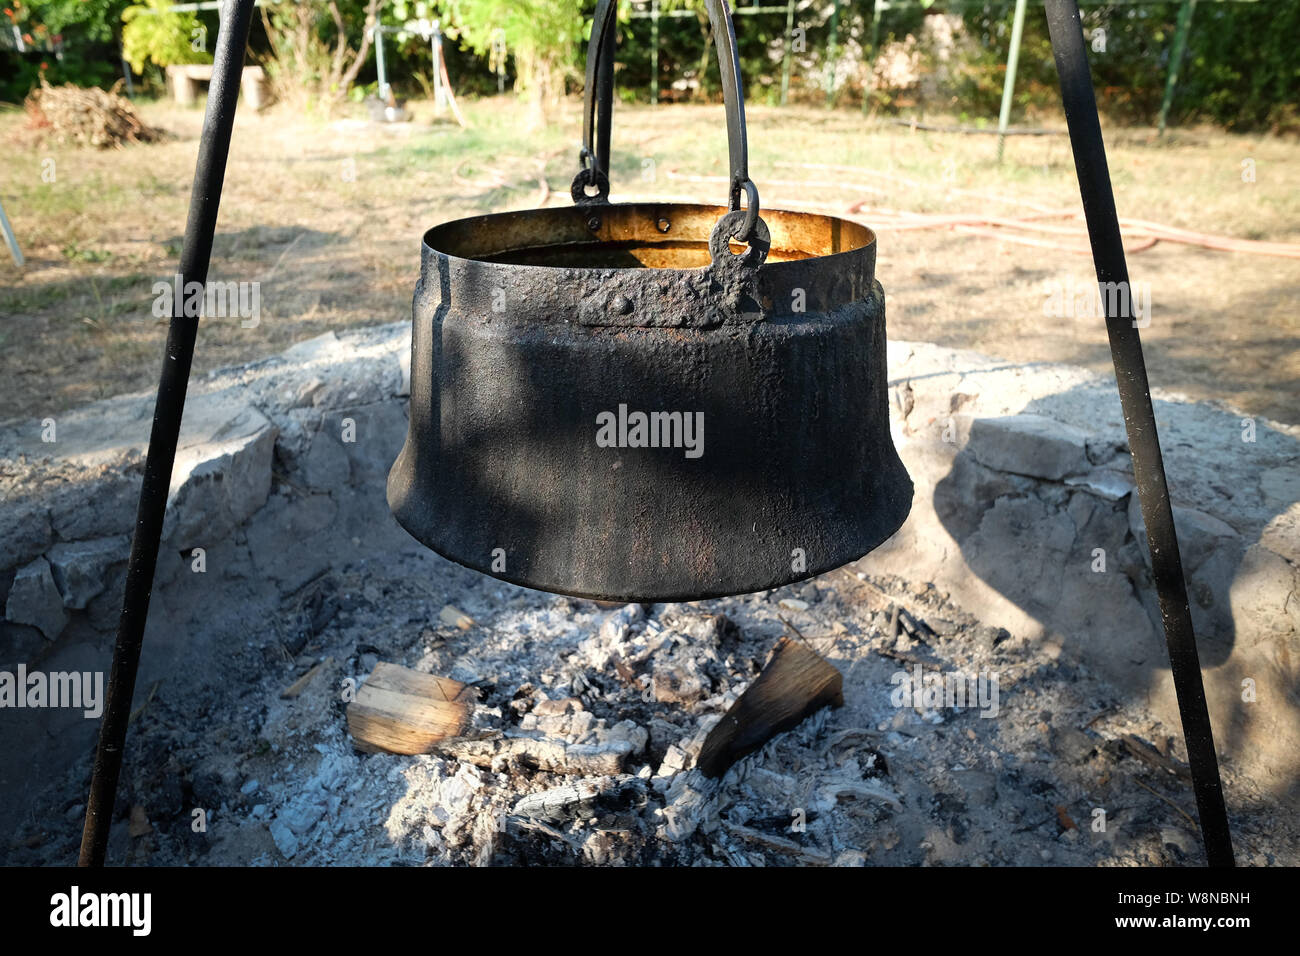 Großen Kochtopf in der Feuerstelle mit Asche Stockfotografie - Alamy